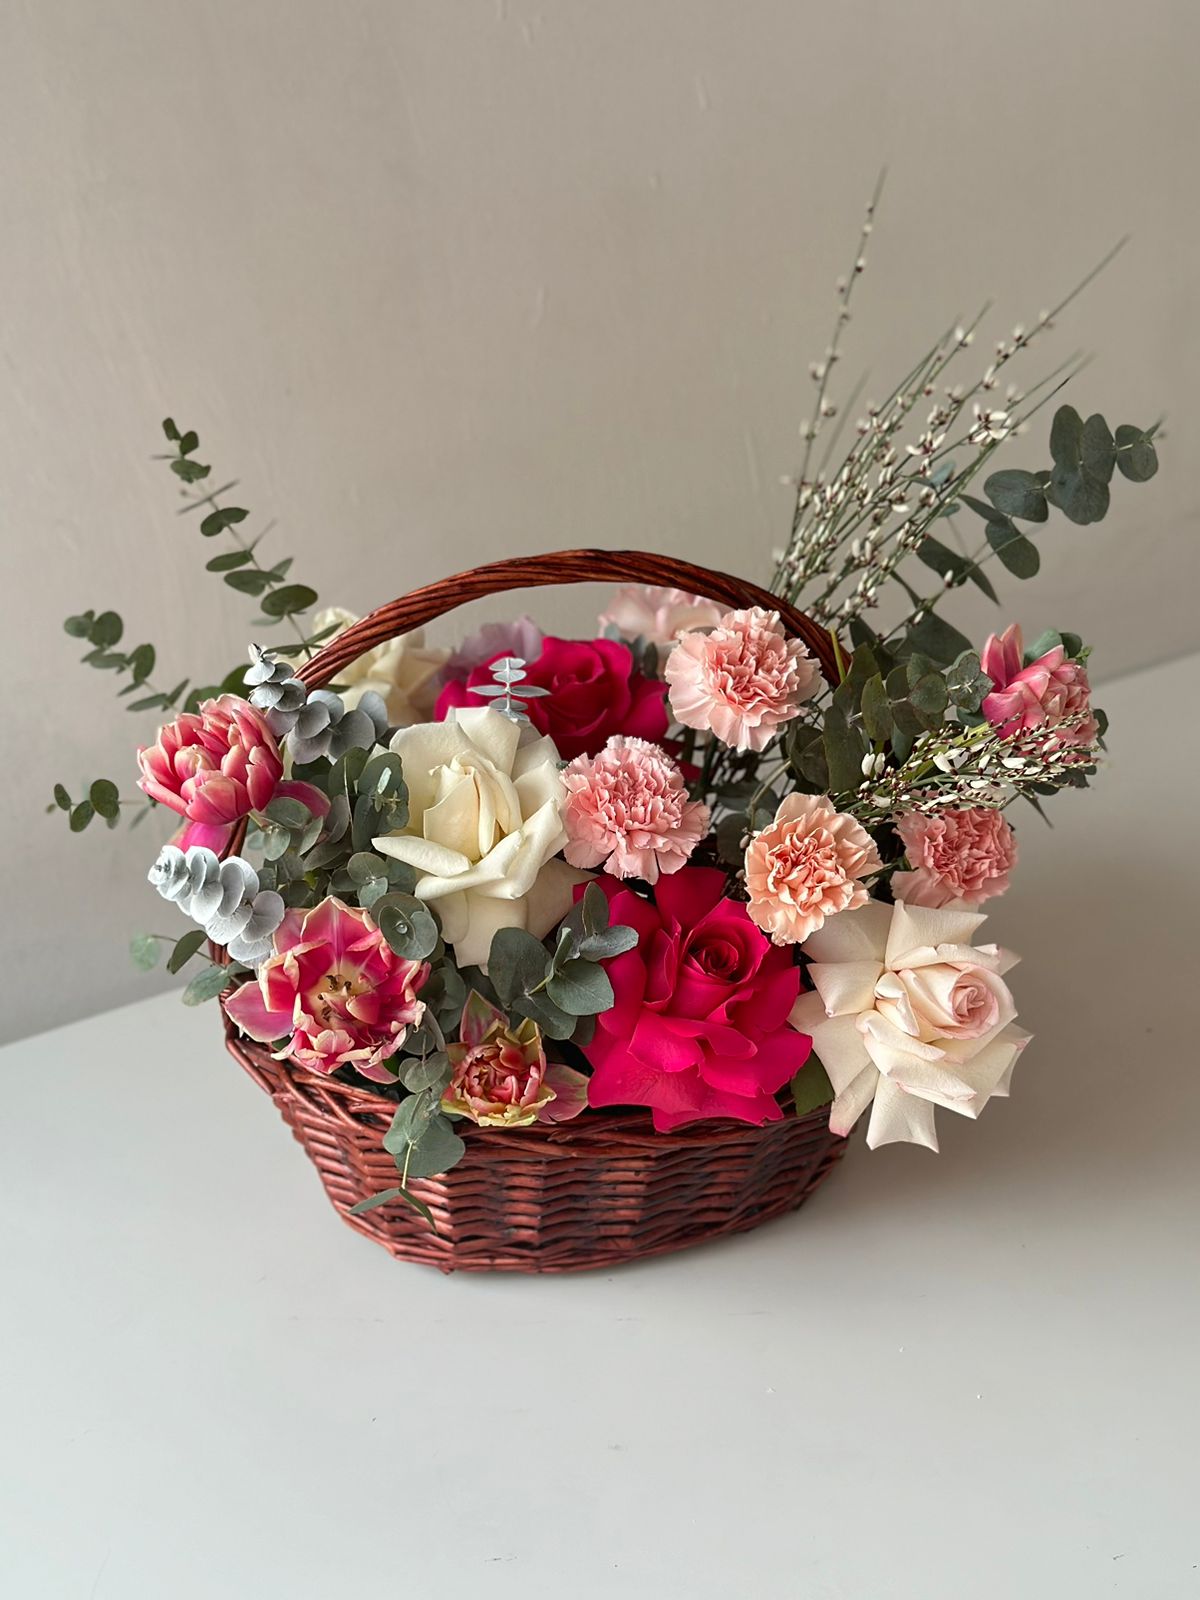 Композиция "Бархатный вечер" из гвоздик, роз и тюльпанов в корзине